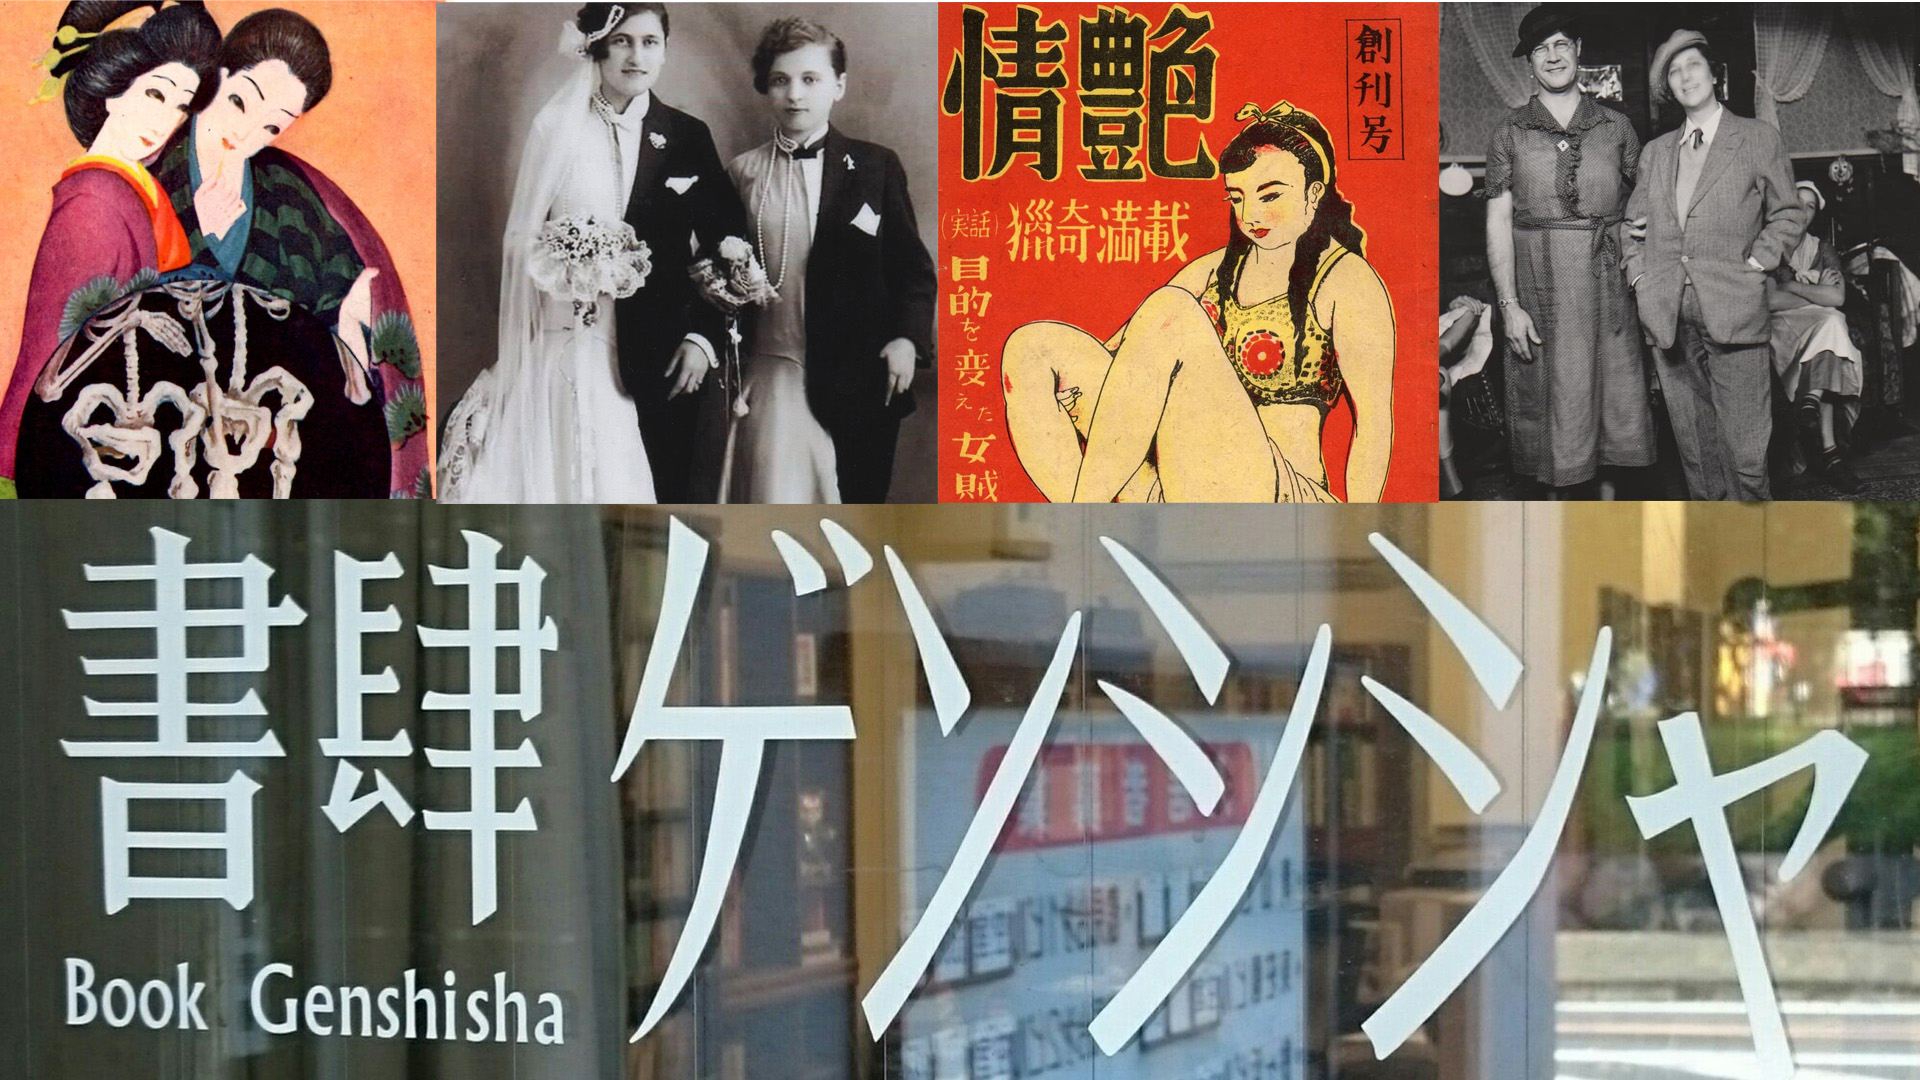 「讓LGBT抬頭挺胸」 日本怪奇舊書店 顛覆既有價值觀